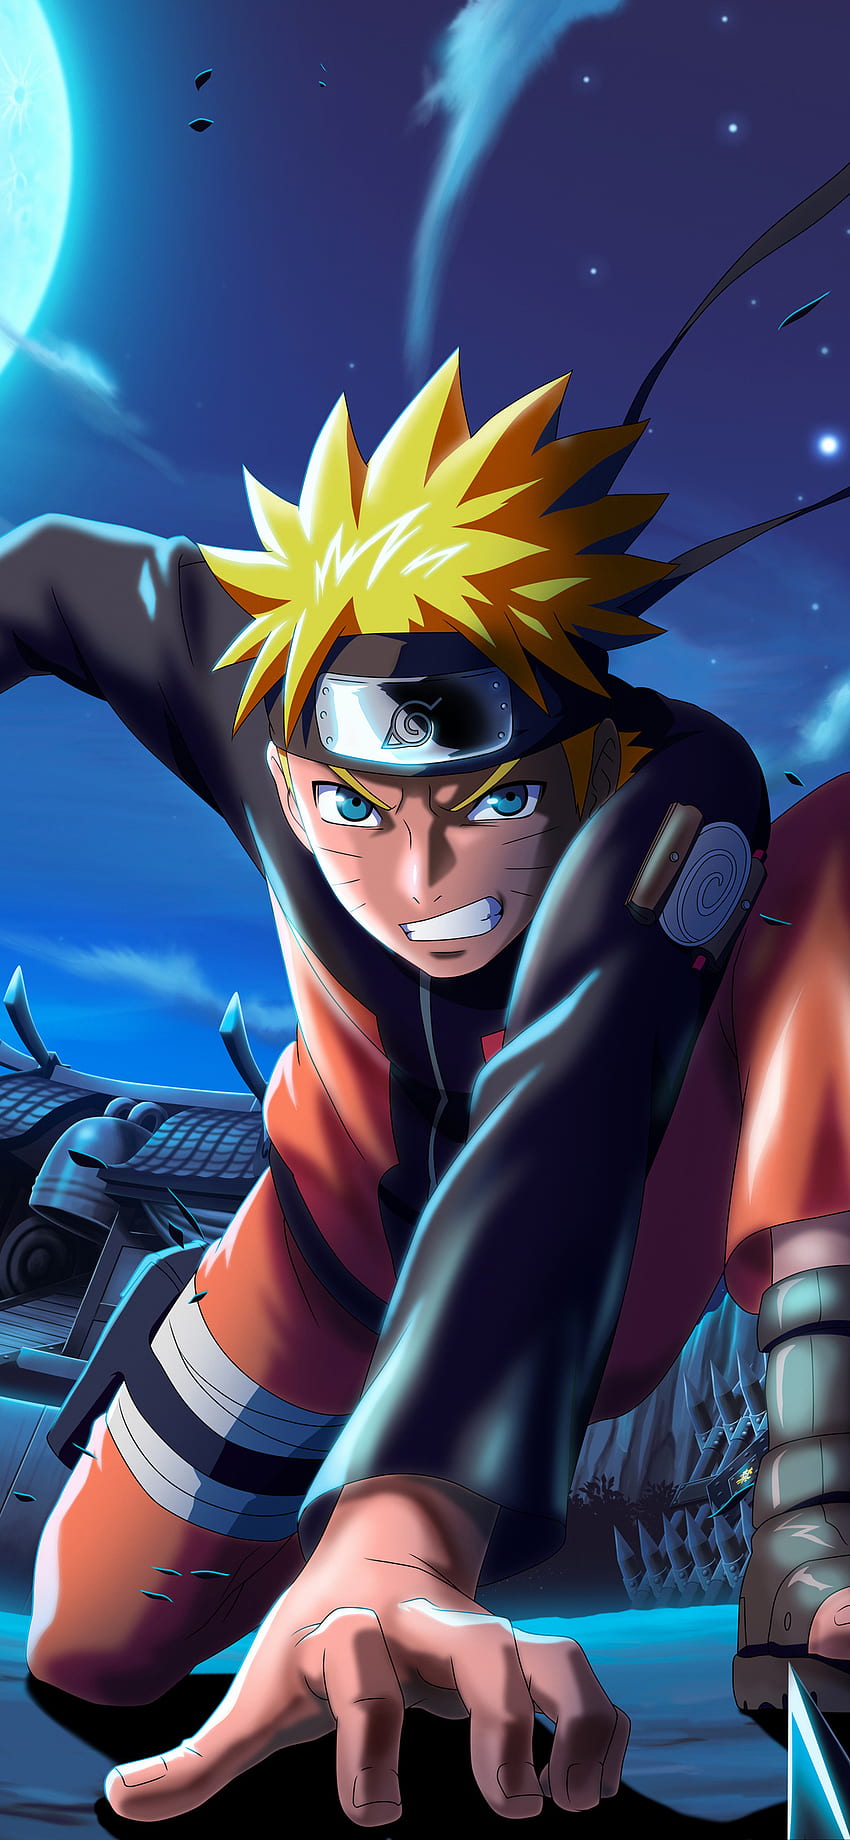 Naruto X Boruto Ninja Voltage: Sáng tạo và táo bạo, Naruto X Boruto Ninja Voltage chắc chắn sẽ thỏa mãn đam mê của bạn với những chiến đấu kịch tính, những chiêu thức ma thuật siêu phàm và những nhân vật đầy sức mạnh. Hãy xem bức ảnh này và bắt đầu hành trình đến với vùng đất Ninja.